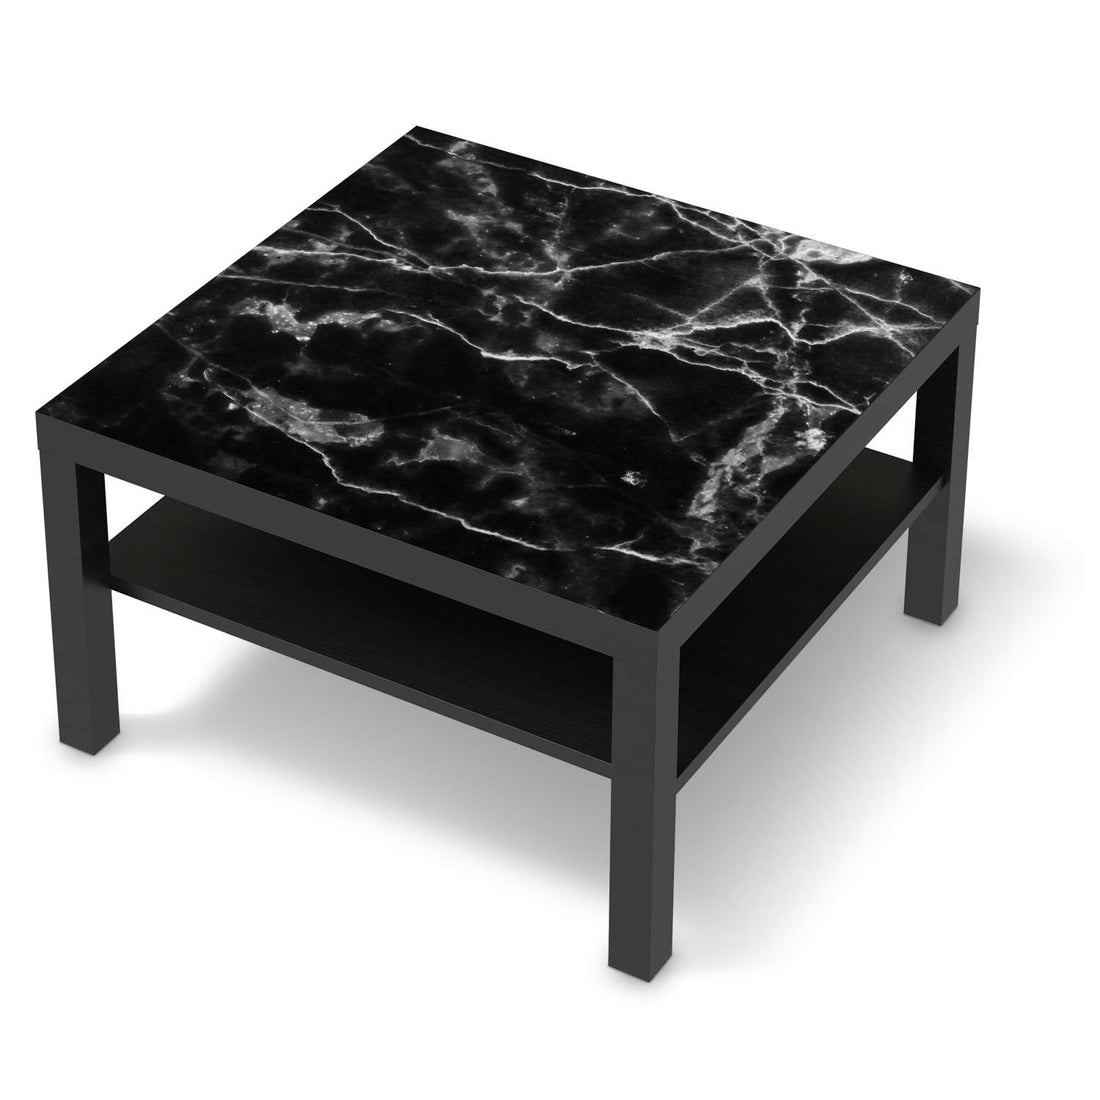 Selbstklebende Folie Marmor schwarz - IKEA Lack Tisch 78x78 cm - schwarz